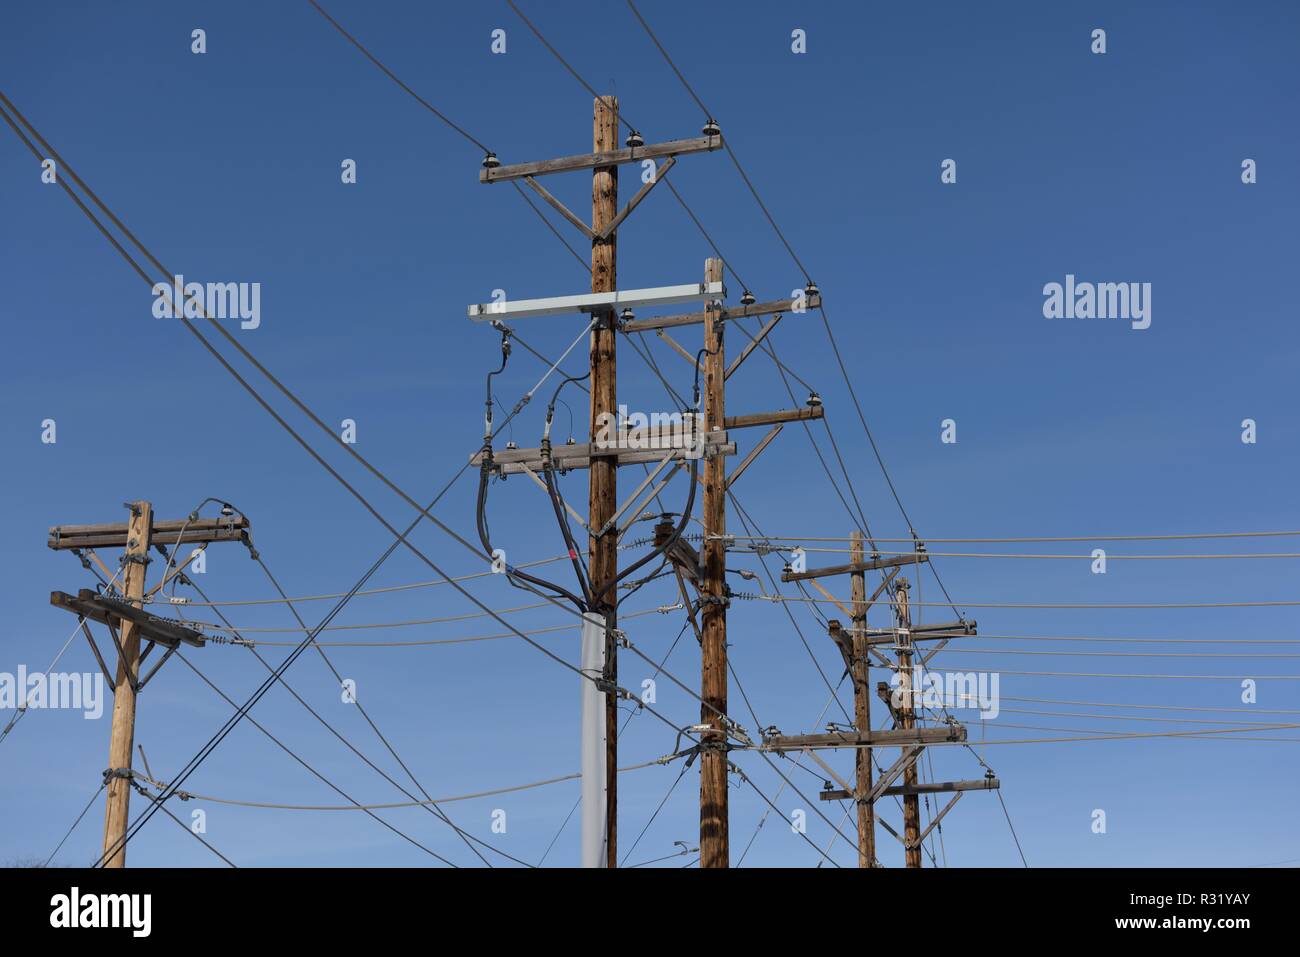 Infrastructure de distribution de réseau électrique, rangée de poteaux de services publics et lignes électriques haute tension avec un ciel bleu dans le Dakota du Sud, États-Unis Banque D'Images